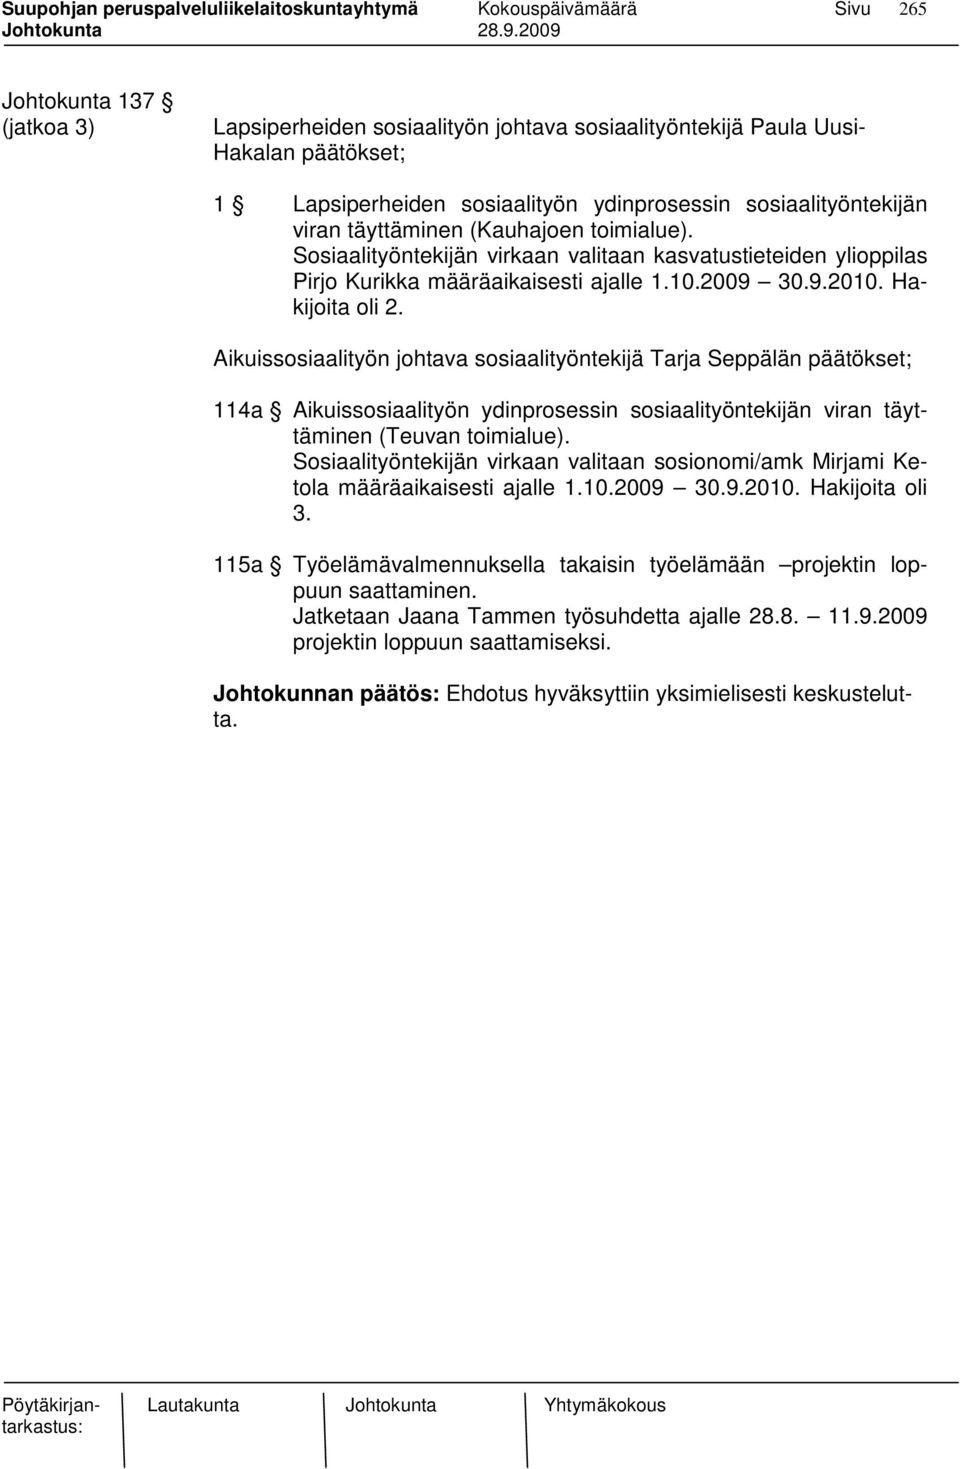 Aikuissosiaalityön johtava sosiaalityöntekijä Tarja Seppälän päätökset; 114a Aikuissosiaalityön ydinprosessin sosiaalityöntekijän viran täyttäminen (Teuvan toimialue).